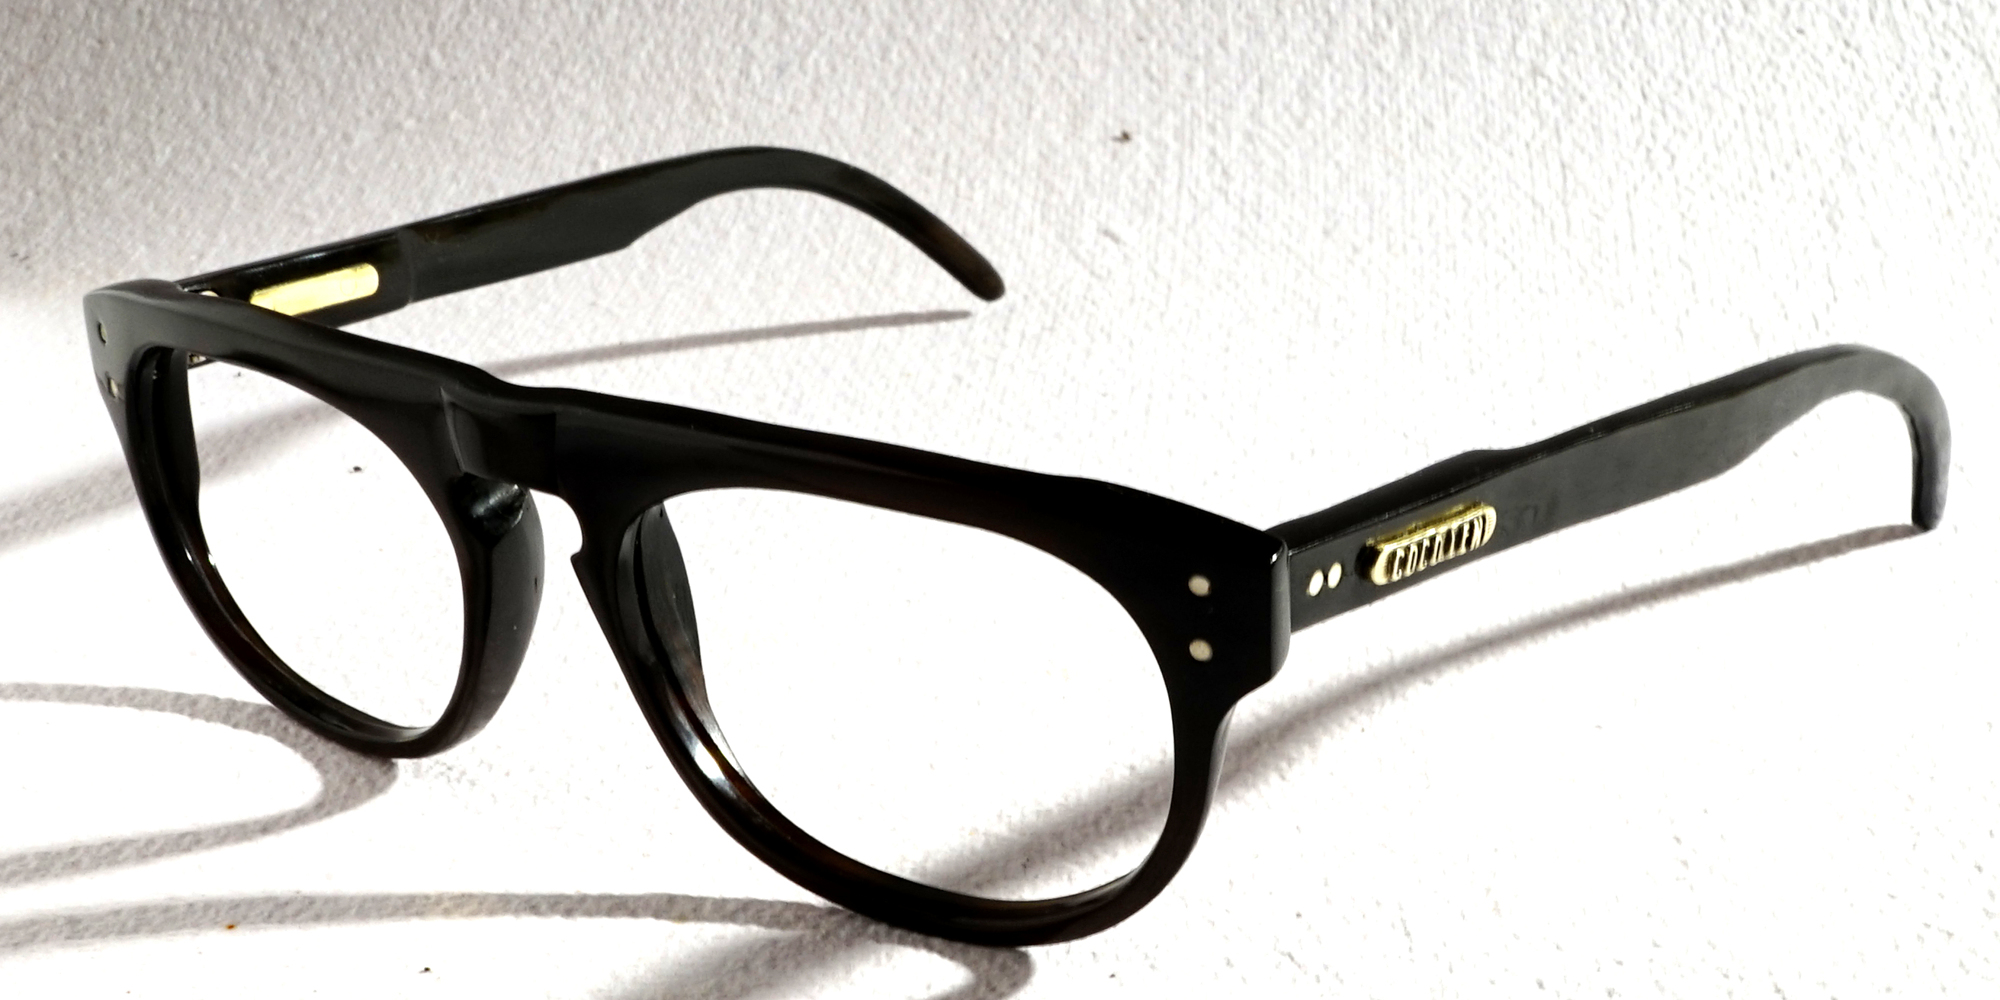 Dieter Black 13785 Eyeglasses $289.00. Aviator | Male | Buffalo Horn